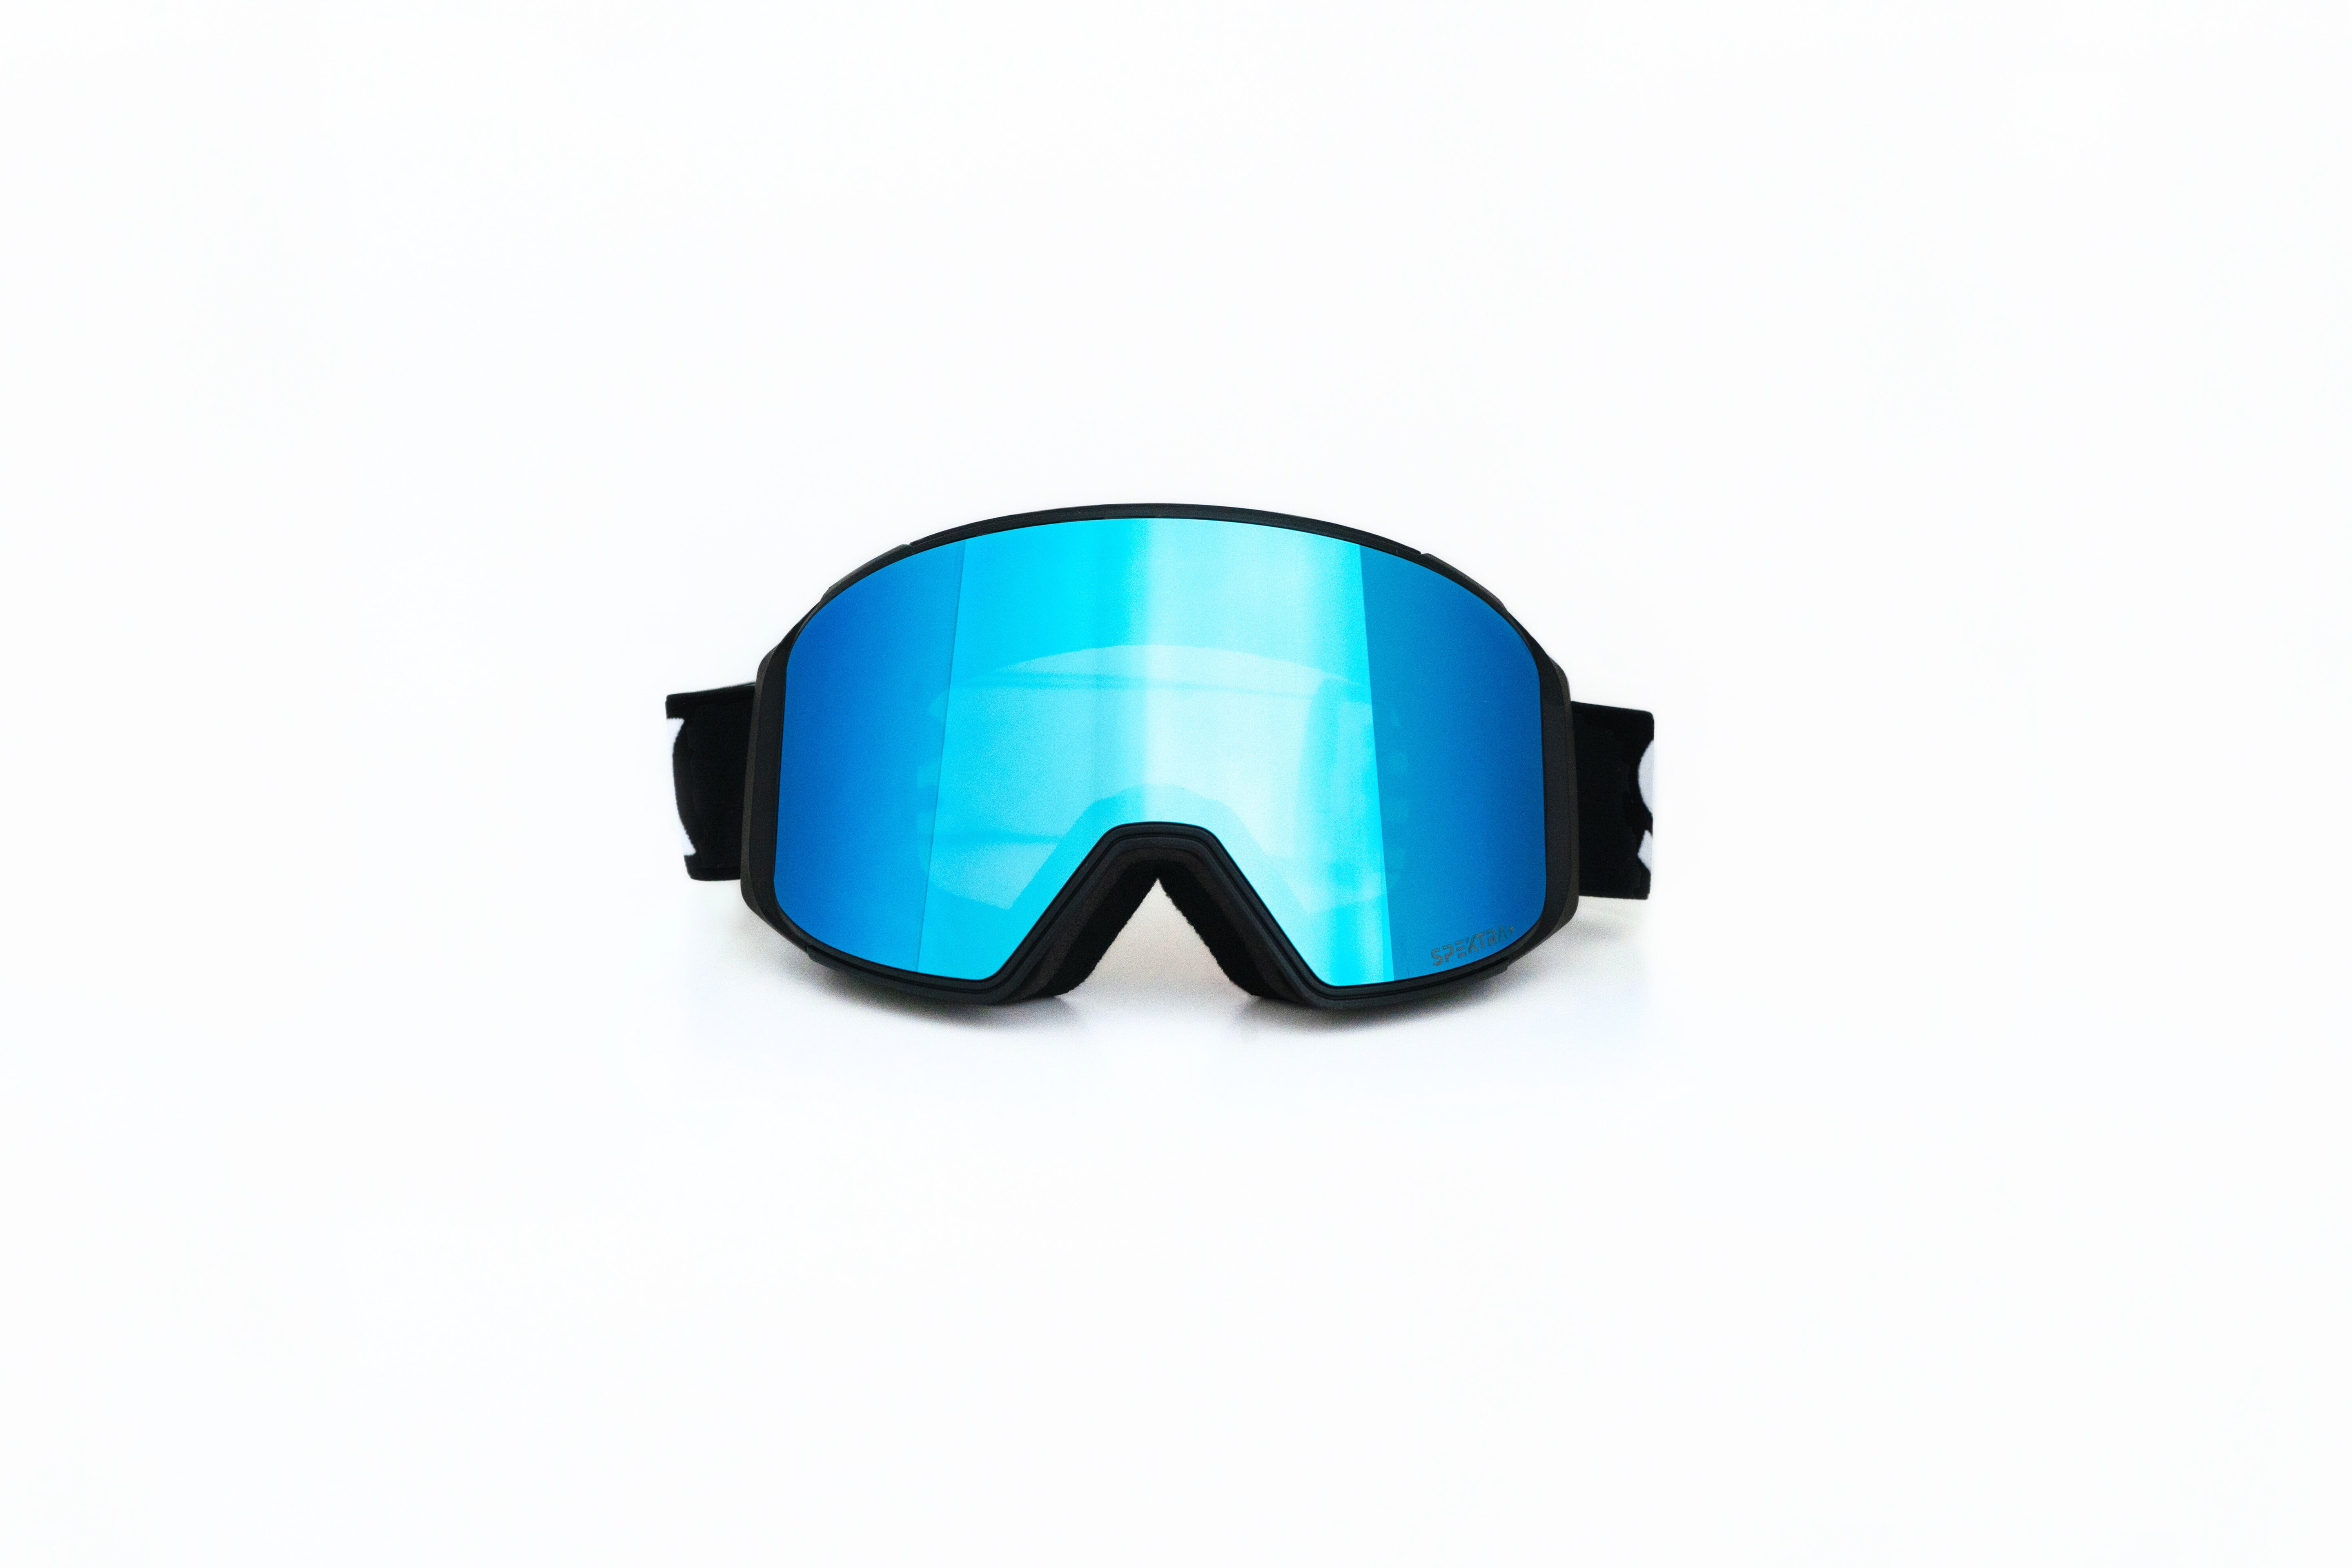 APEX ski goggles